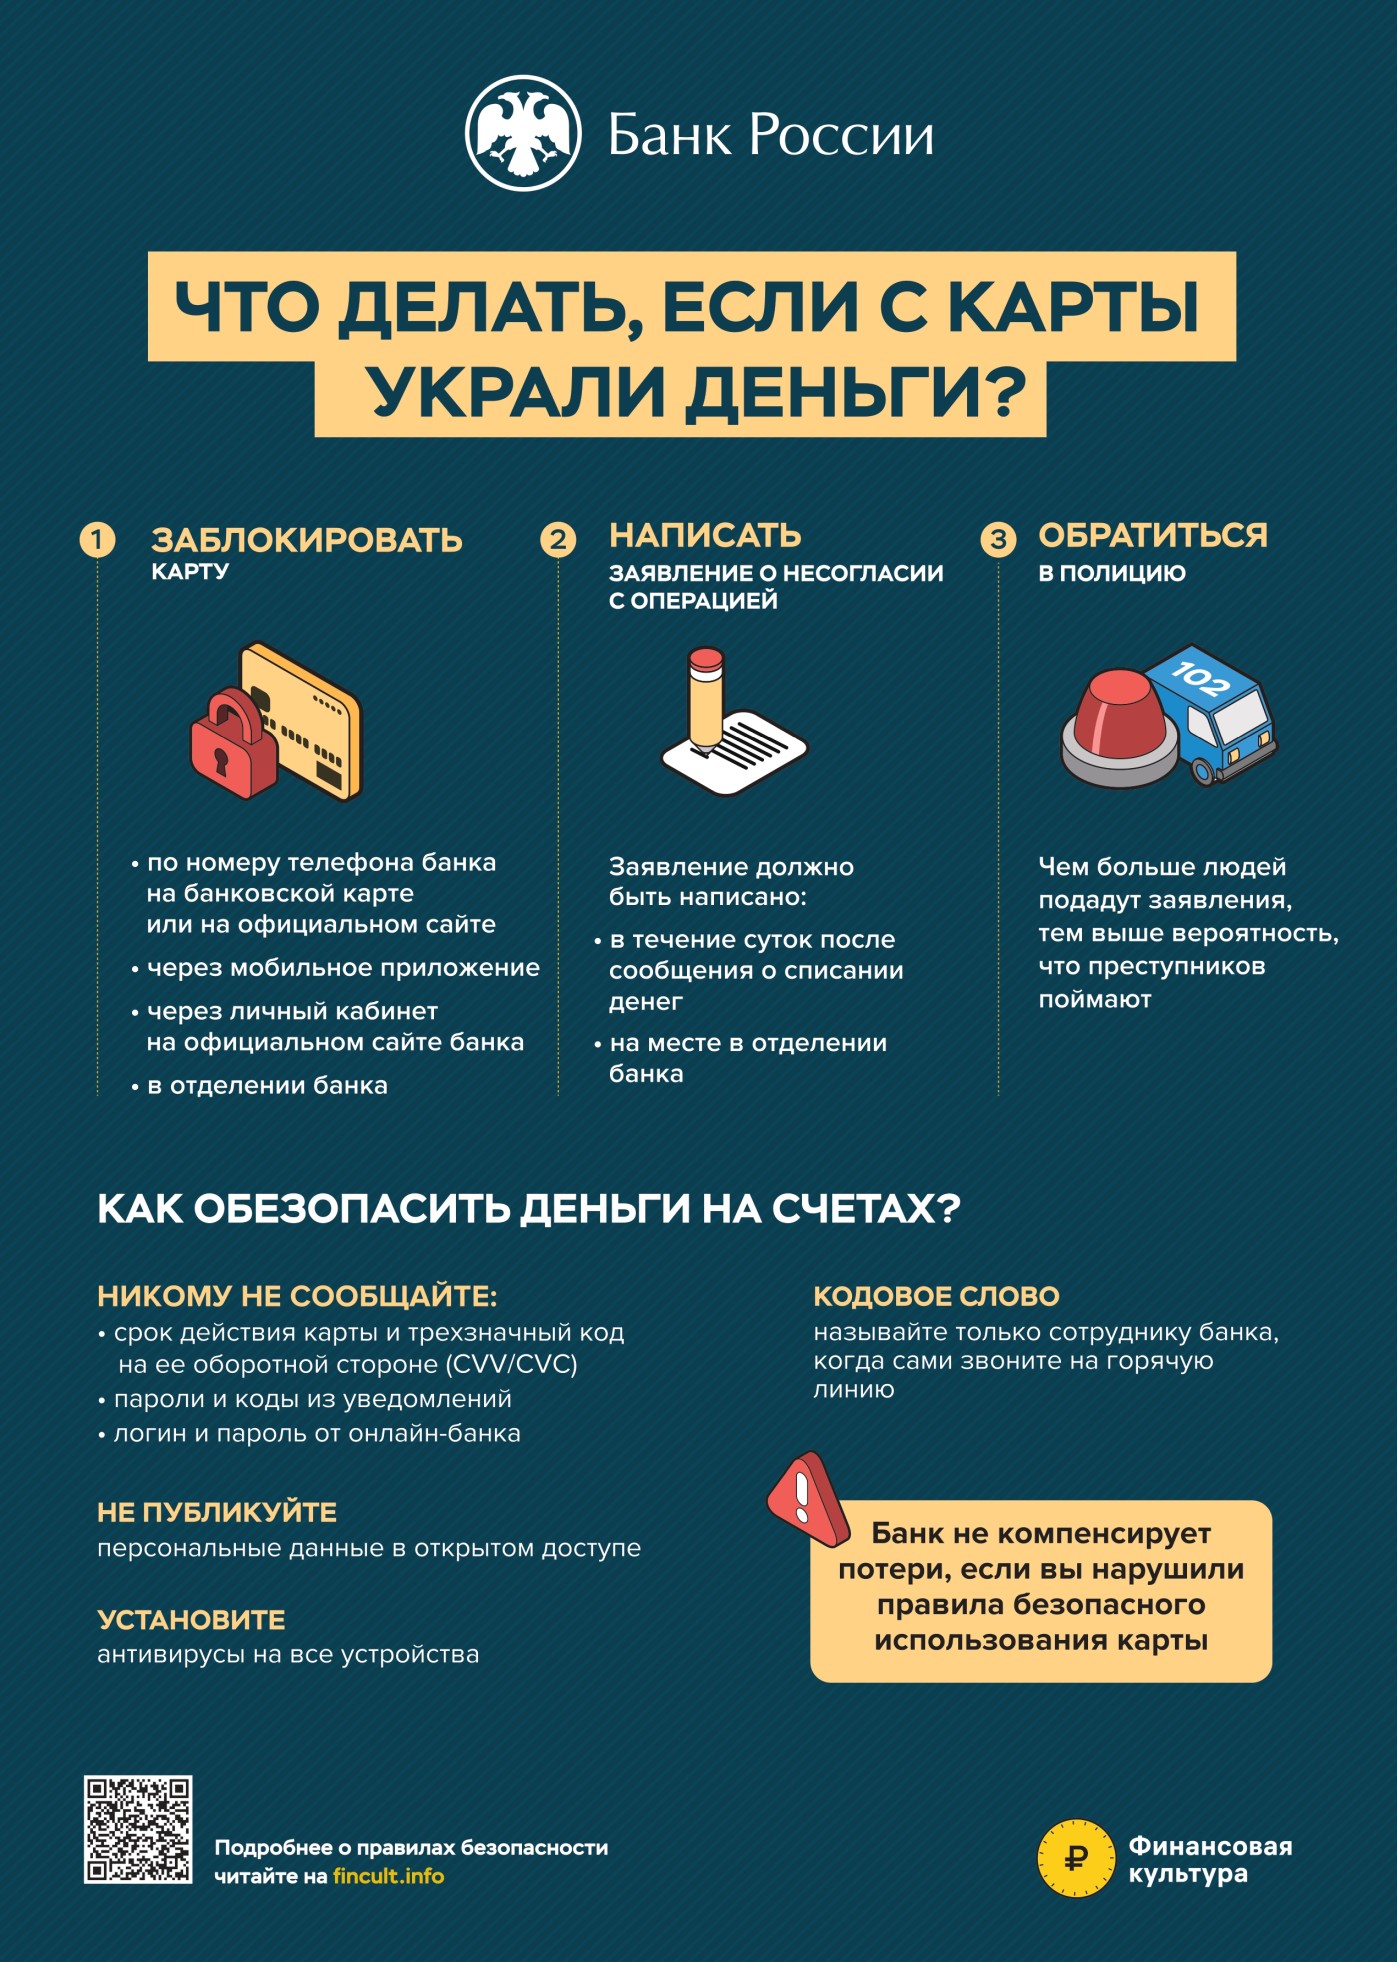 Центральный Банк РФ разработал плакаты по противодействию финансовому и цифровому мошенничеству